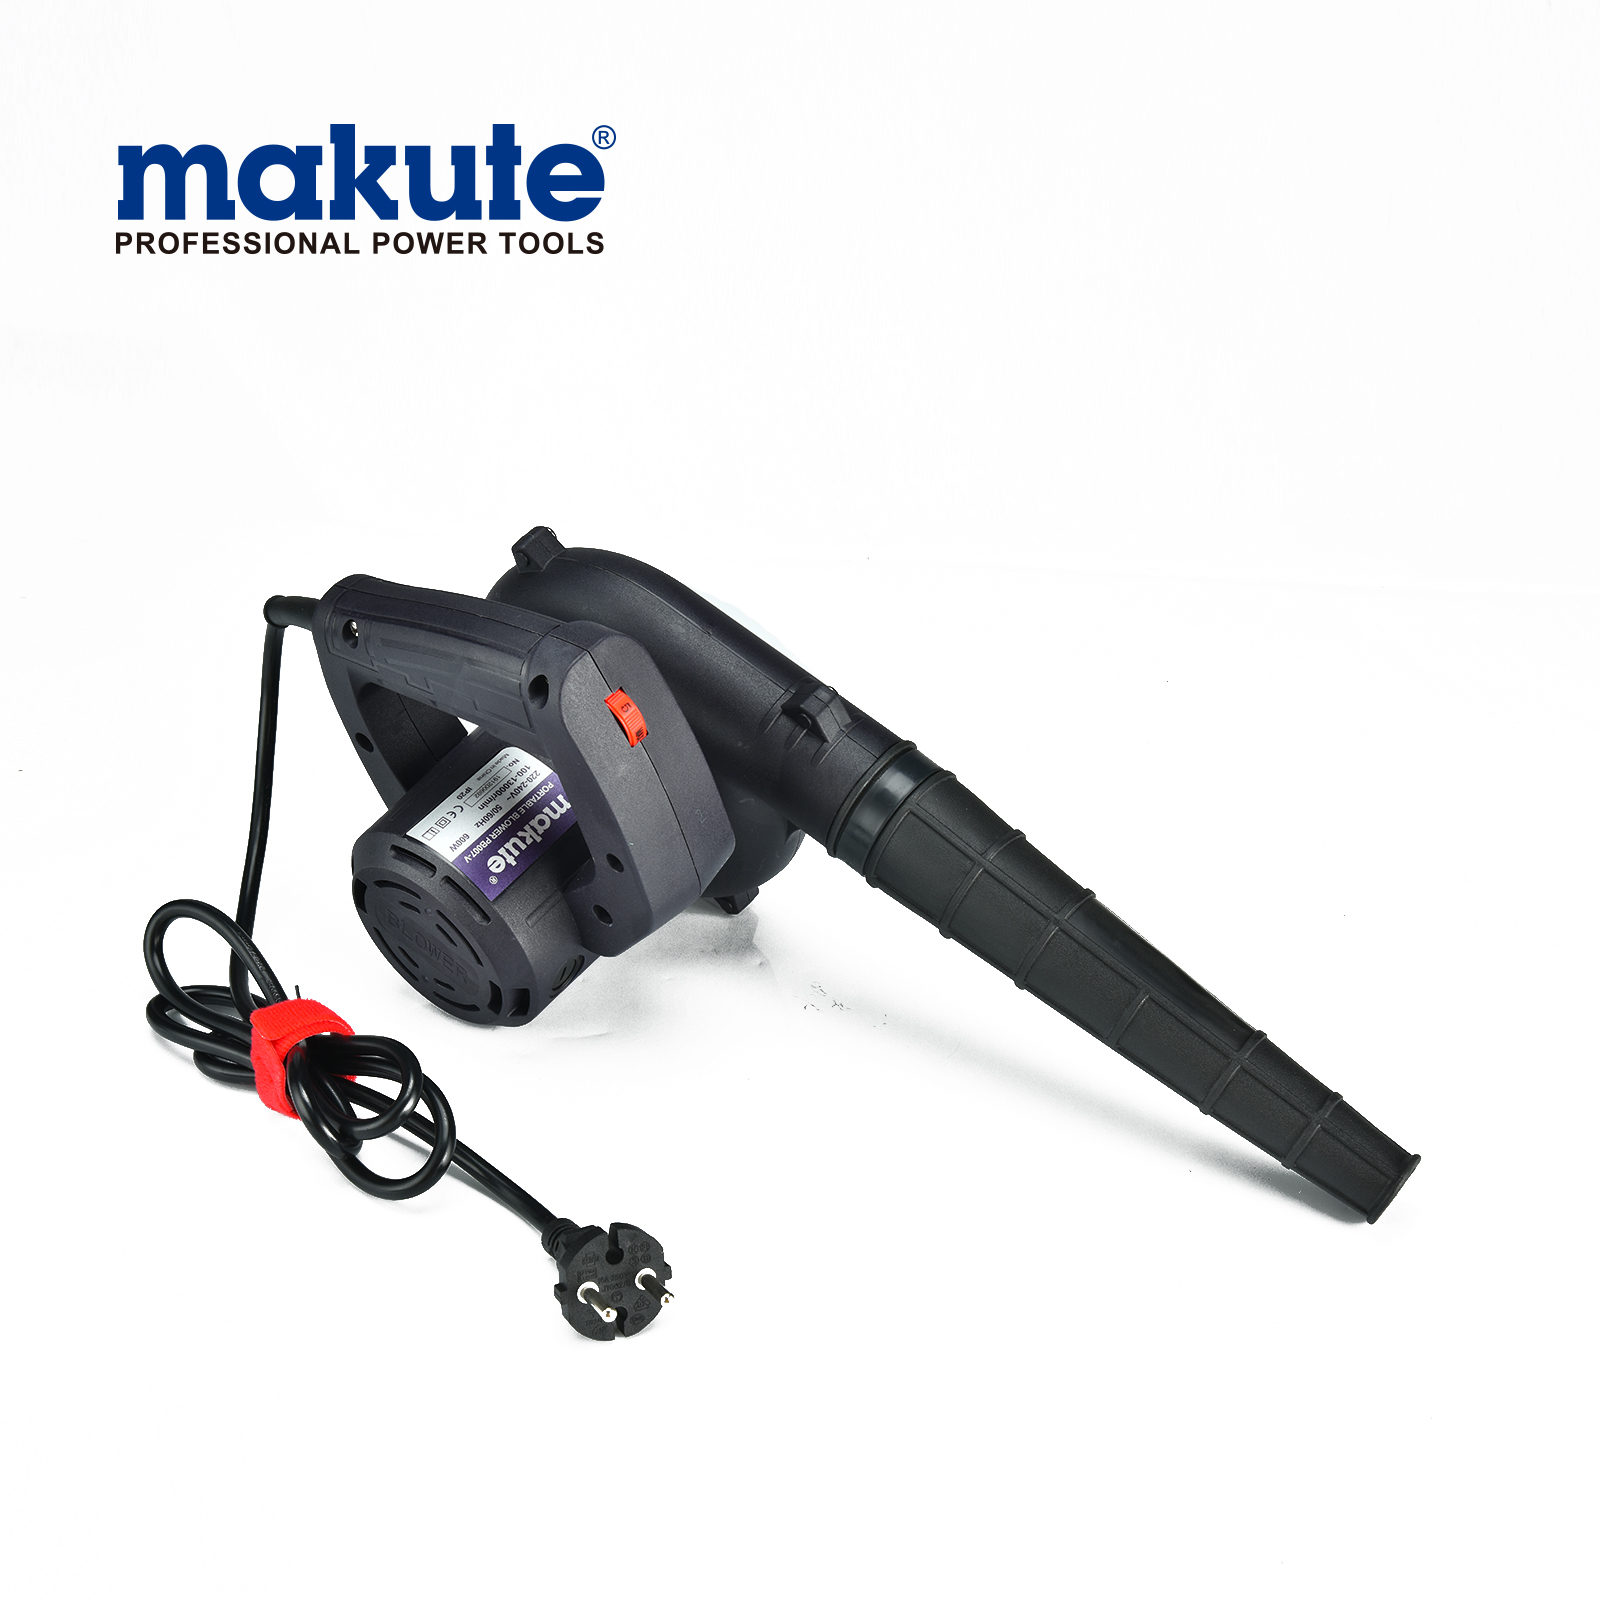 MAKUTE PB007-V herramientas eléctricas pequeñas y ligeras con soplador eléctrico